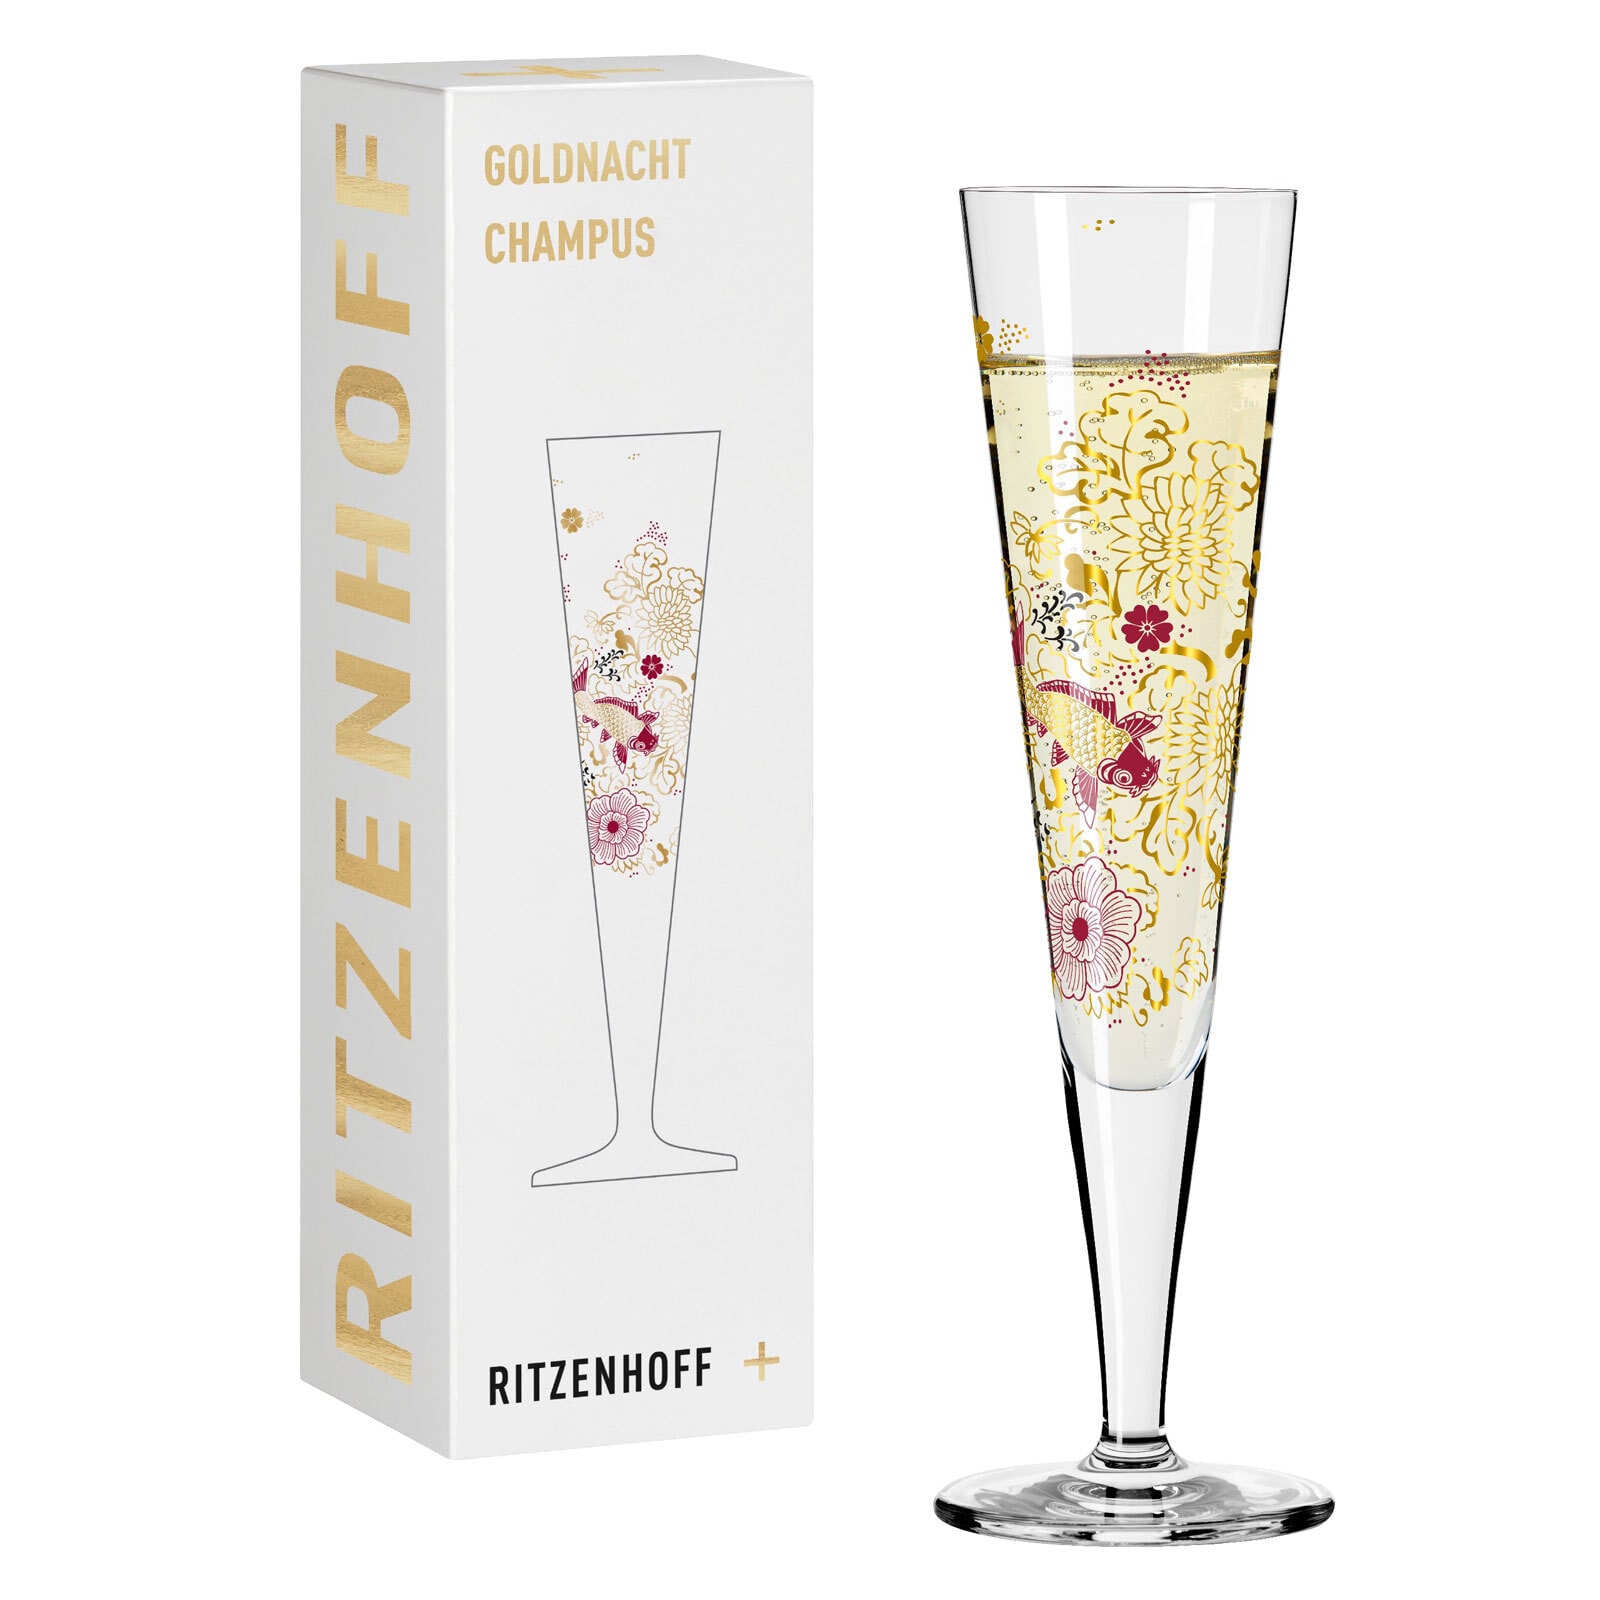 RITZENHOFF Champagnerglas GOLDNACHT IV K. STOCKEBRAND